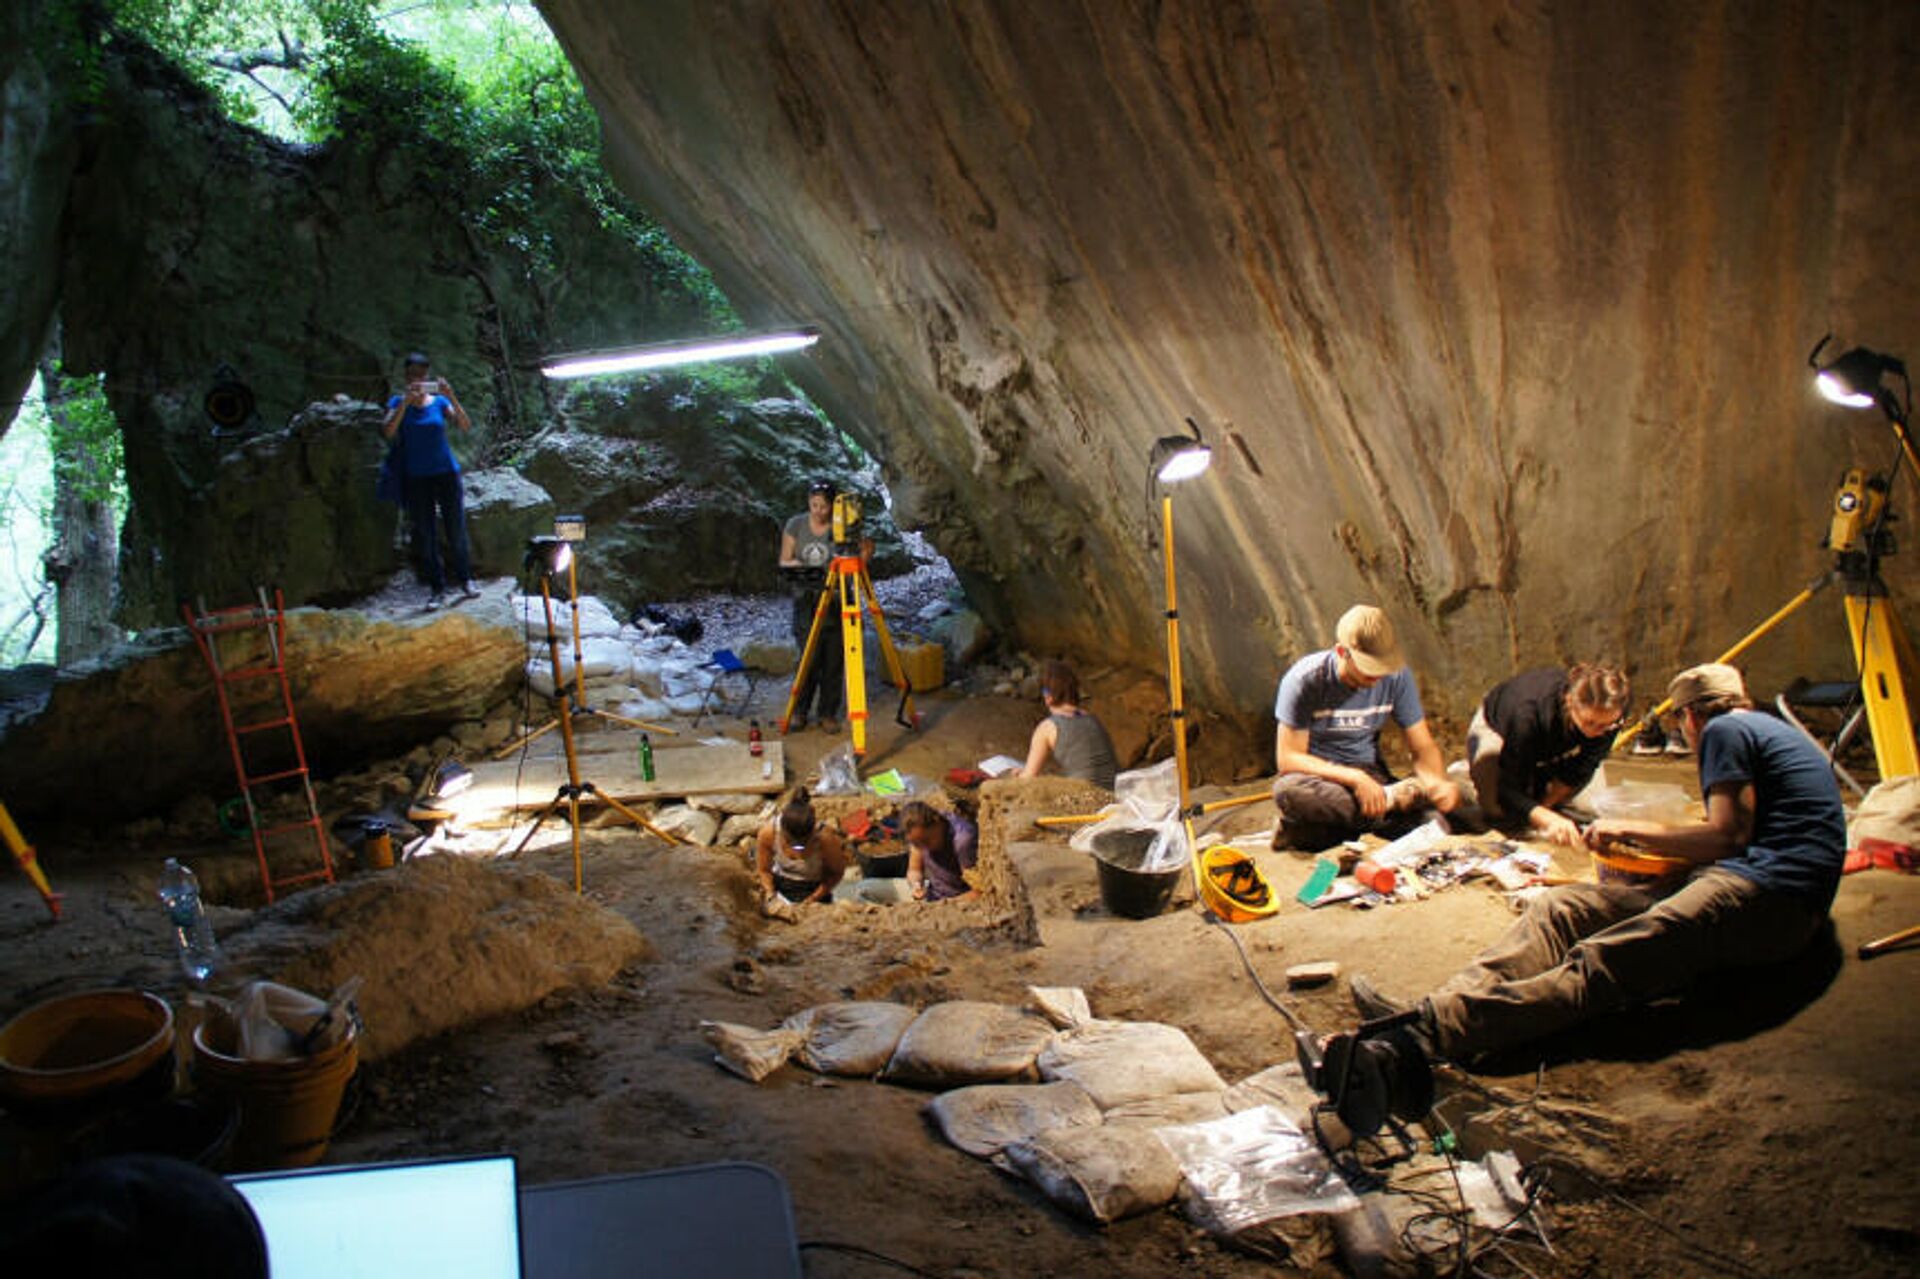 Diğer taraftan, Neve’nin kalıntıları ilk olarak 2017 yılında Ligurya Alpleri yakınındaki Arma Veirana mağarasında keşfedildi ve sonraki yıllarda özenle kazıldı. Uzmanlar, erken Orta Taş Çağı dönemine ait çok az gömü bulunduğunu belirterek, yeni bulguların o dönemde yapılan cenaze törenlerinin eşitlikçi doğasının kanıtı olduğunu bildirdi. - Sputnik Türkiye, 1920, 15.12.2021